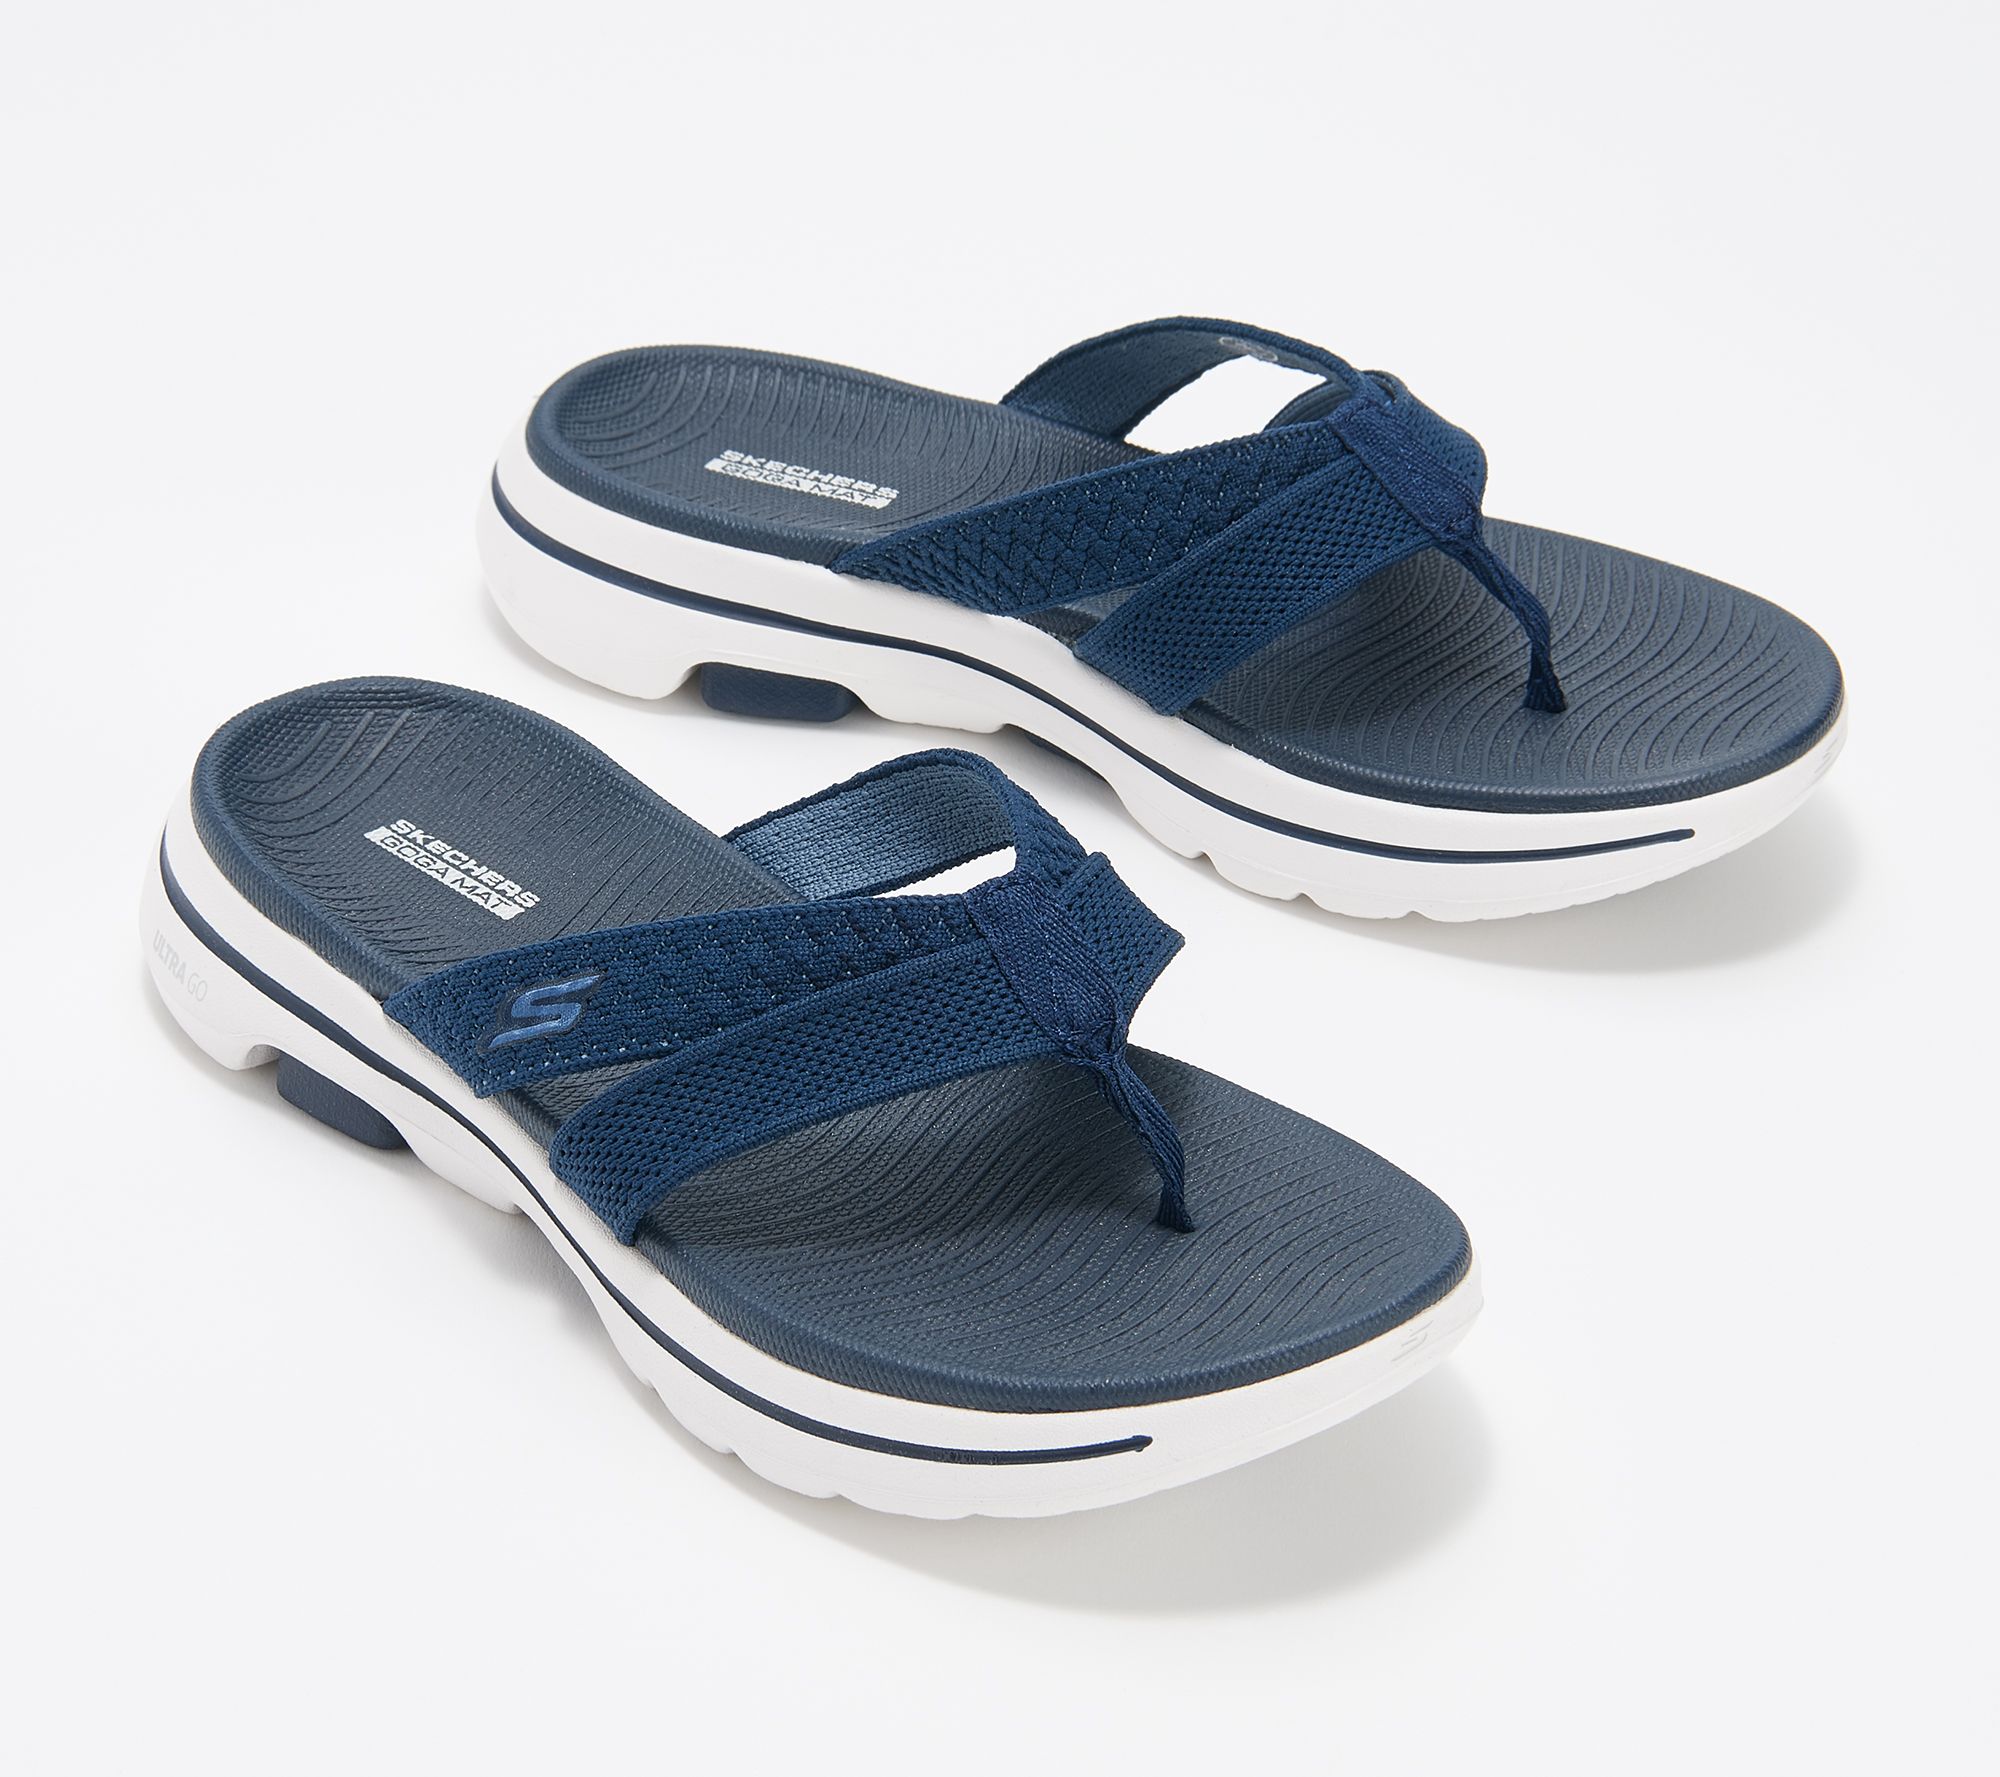 Skechers GoWalk 5 Thong Sandals- Sun 